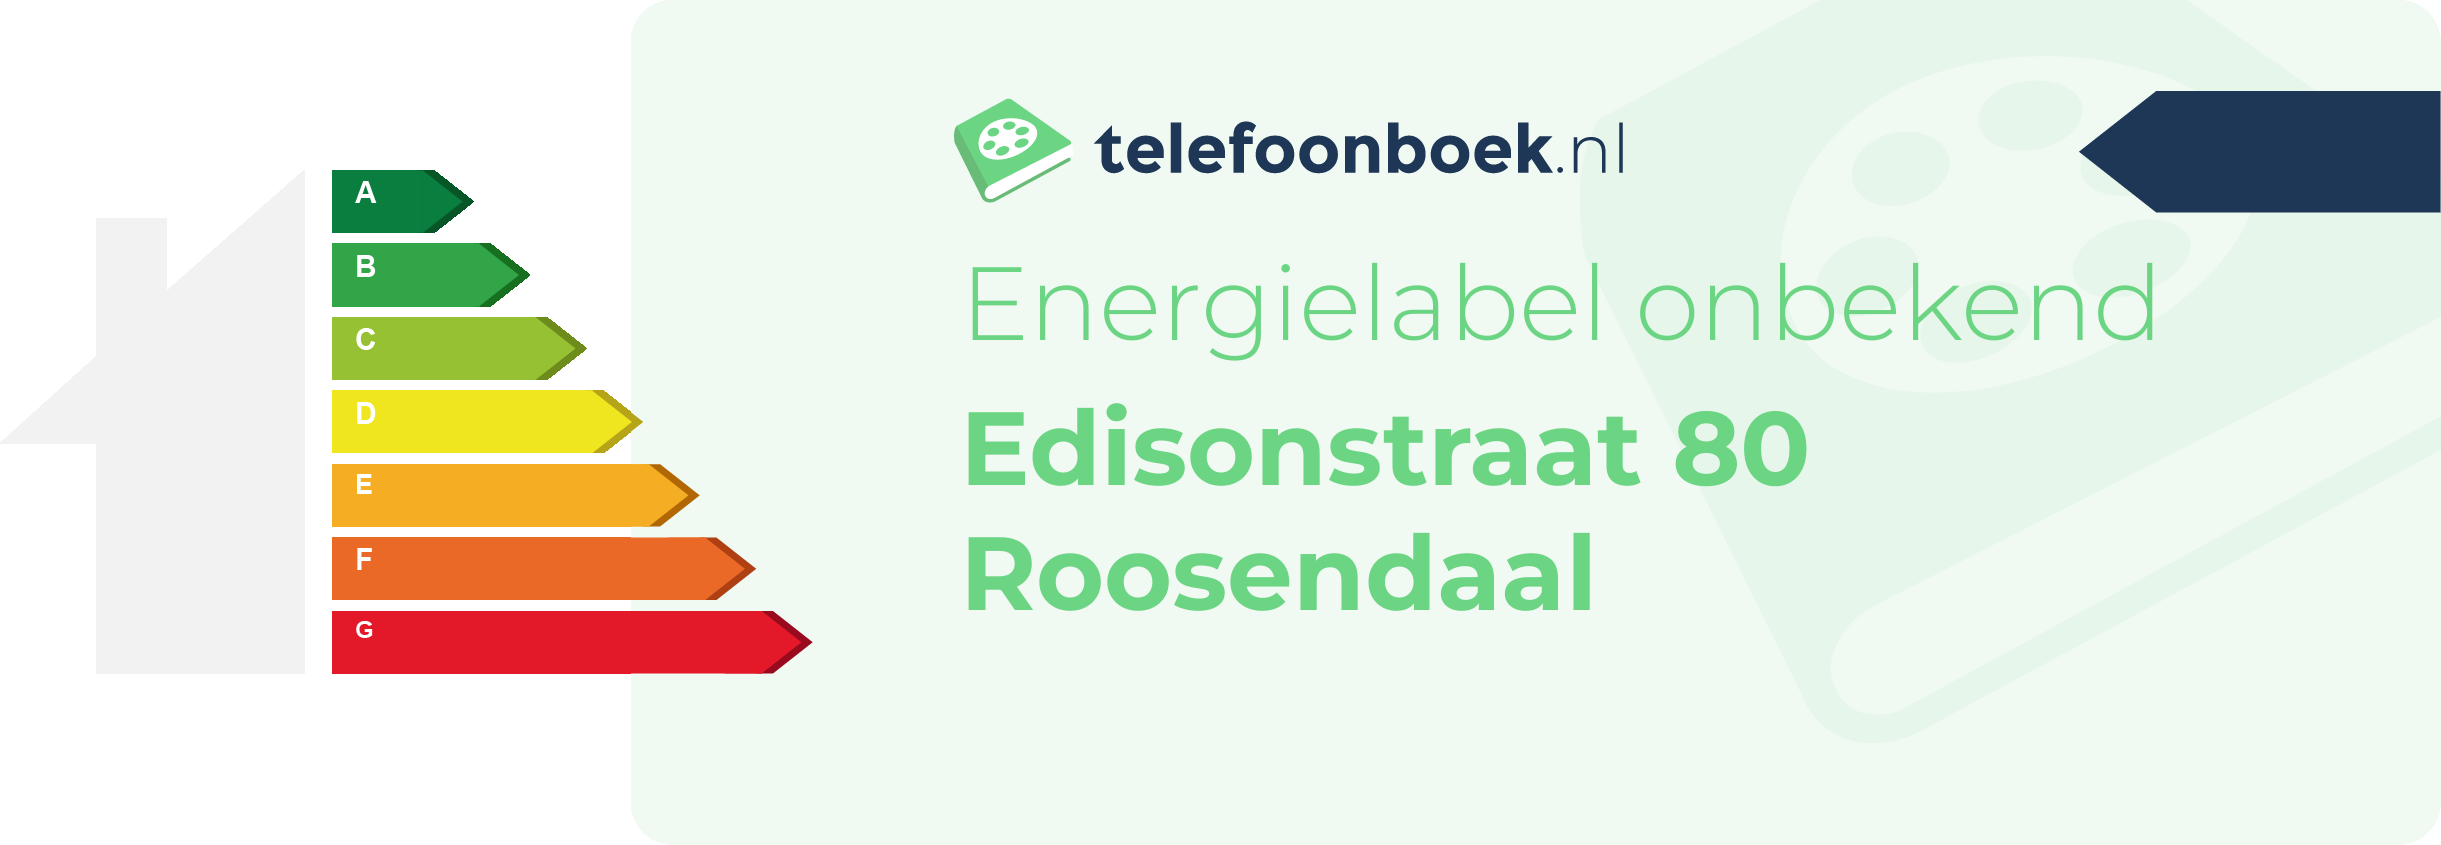 Energielabel Edisonstraat 80 Roosendaal